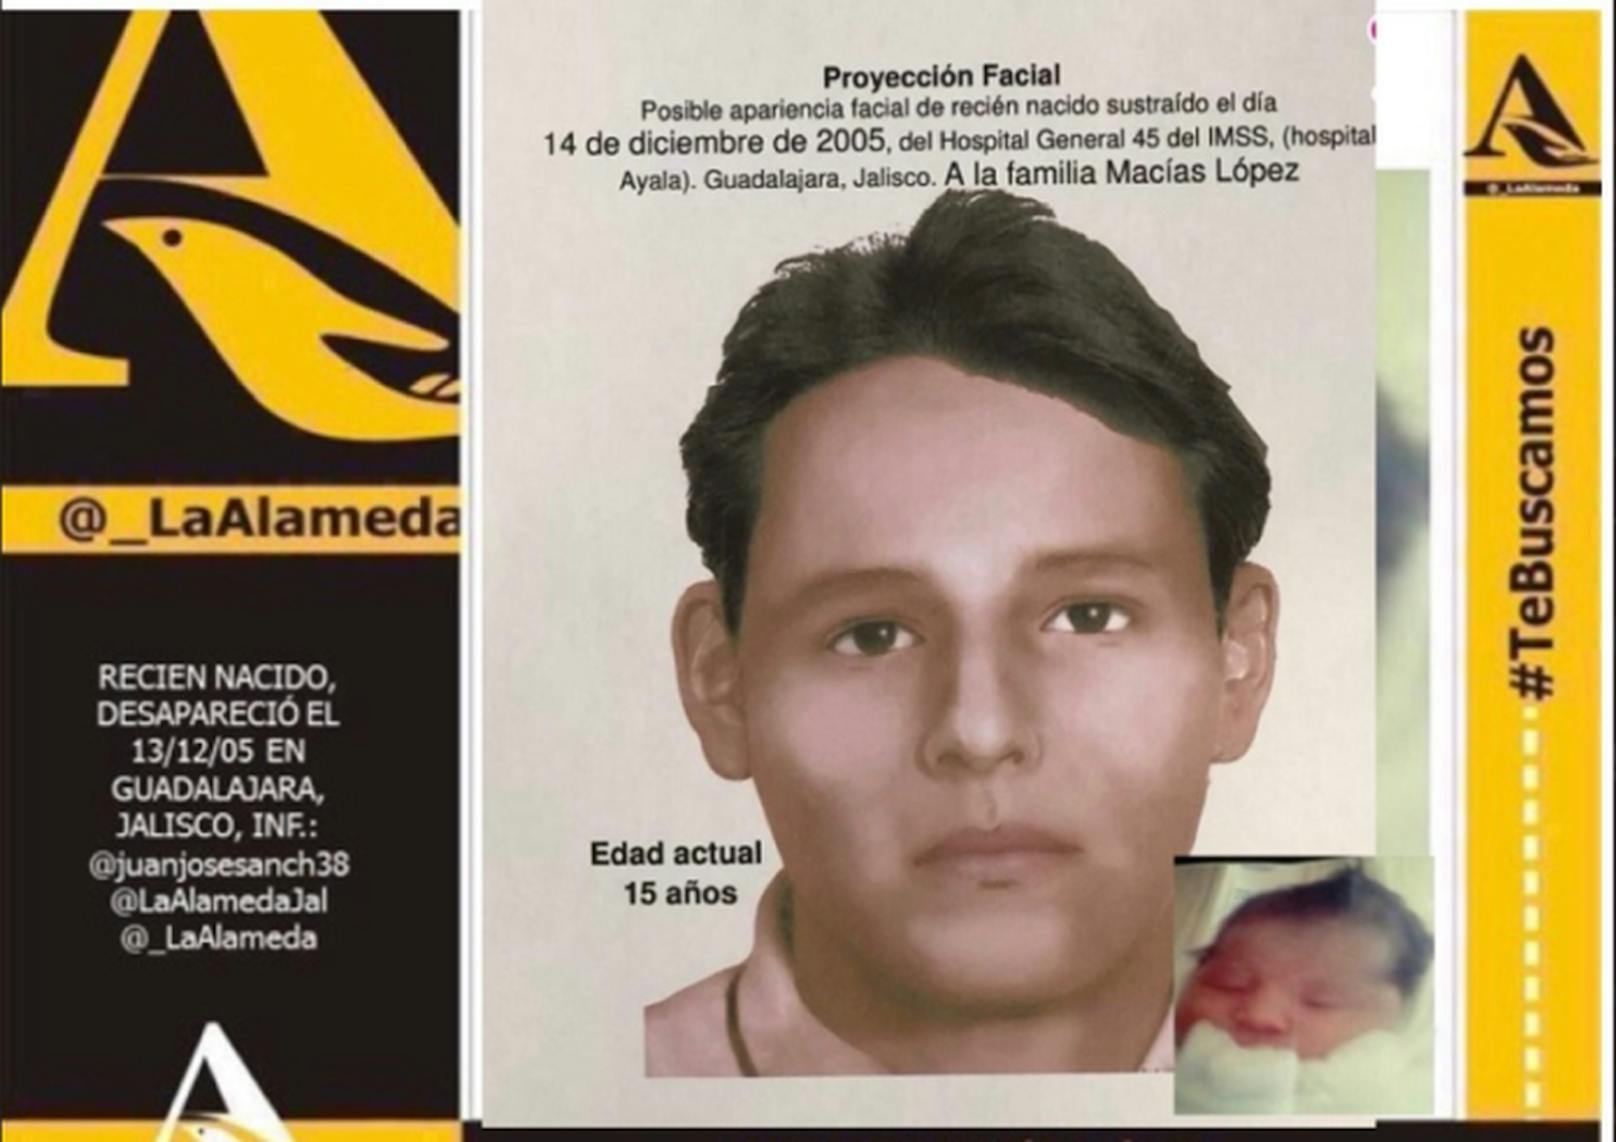 Eine Gesichtsanalyse-Software hat anhand eines Babyfotos ein Bild erstellt, wie der Junge heute aussehen könnte.